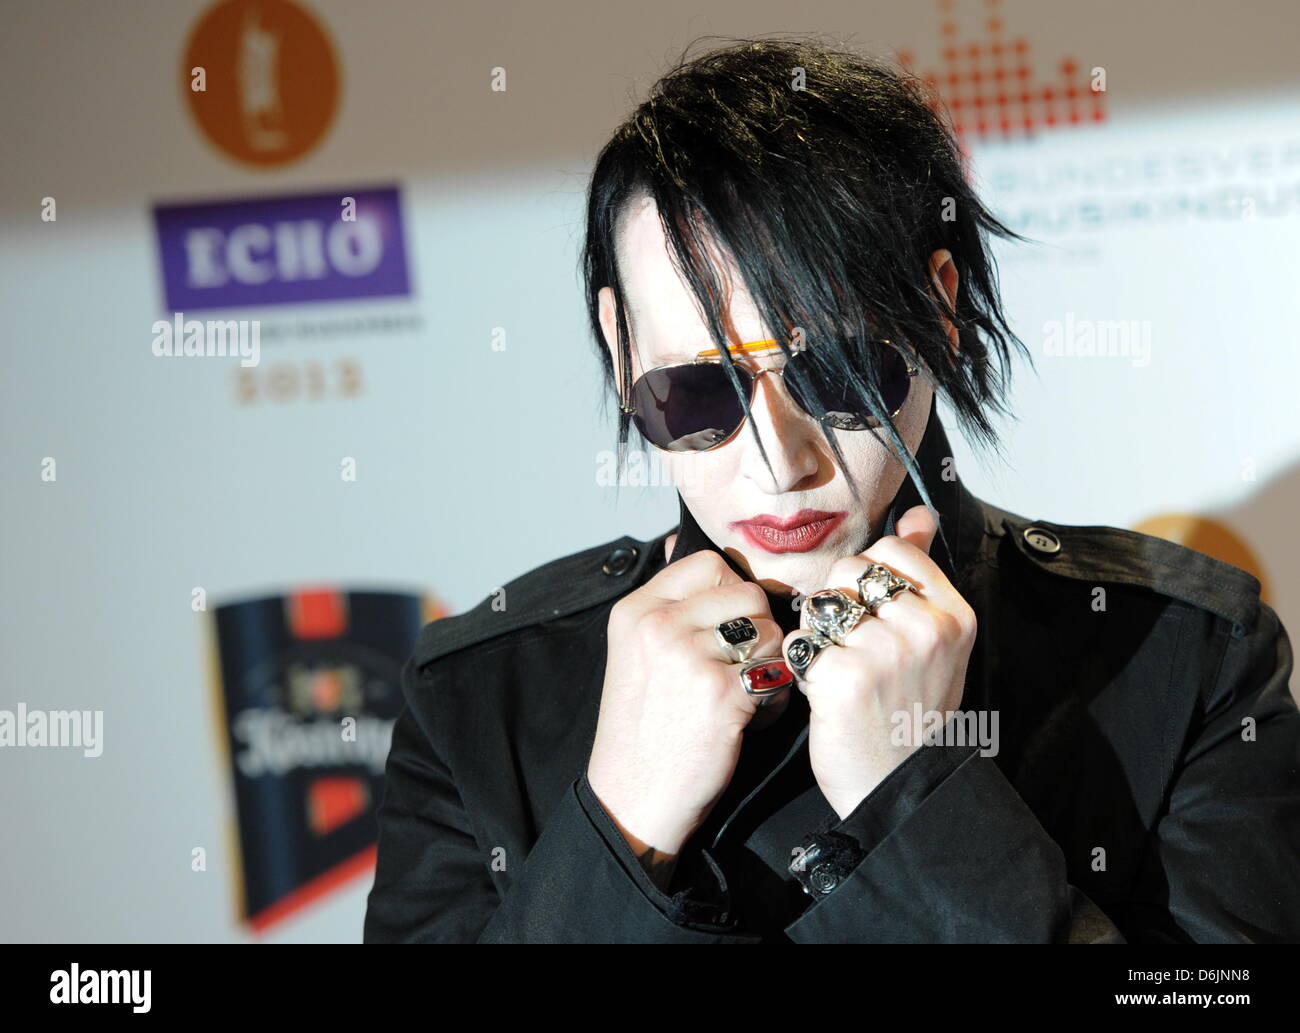 Noi cantante Marilyn Manson arriva per il 2012 Echo Music Awards a Berlino (Germania), 22 marzo 2012. L'Eco Music Award è presentato in 27 categorie. Foto: Jens Kalaene dpa/lbn Foto Stock